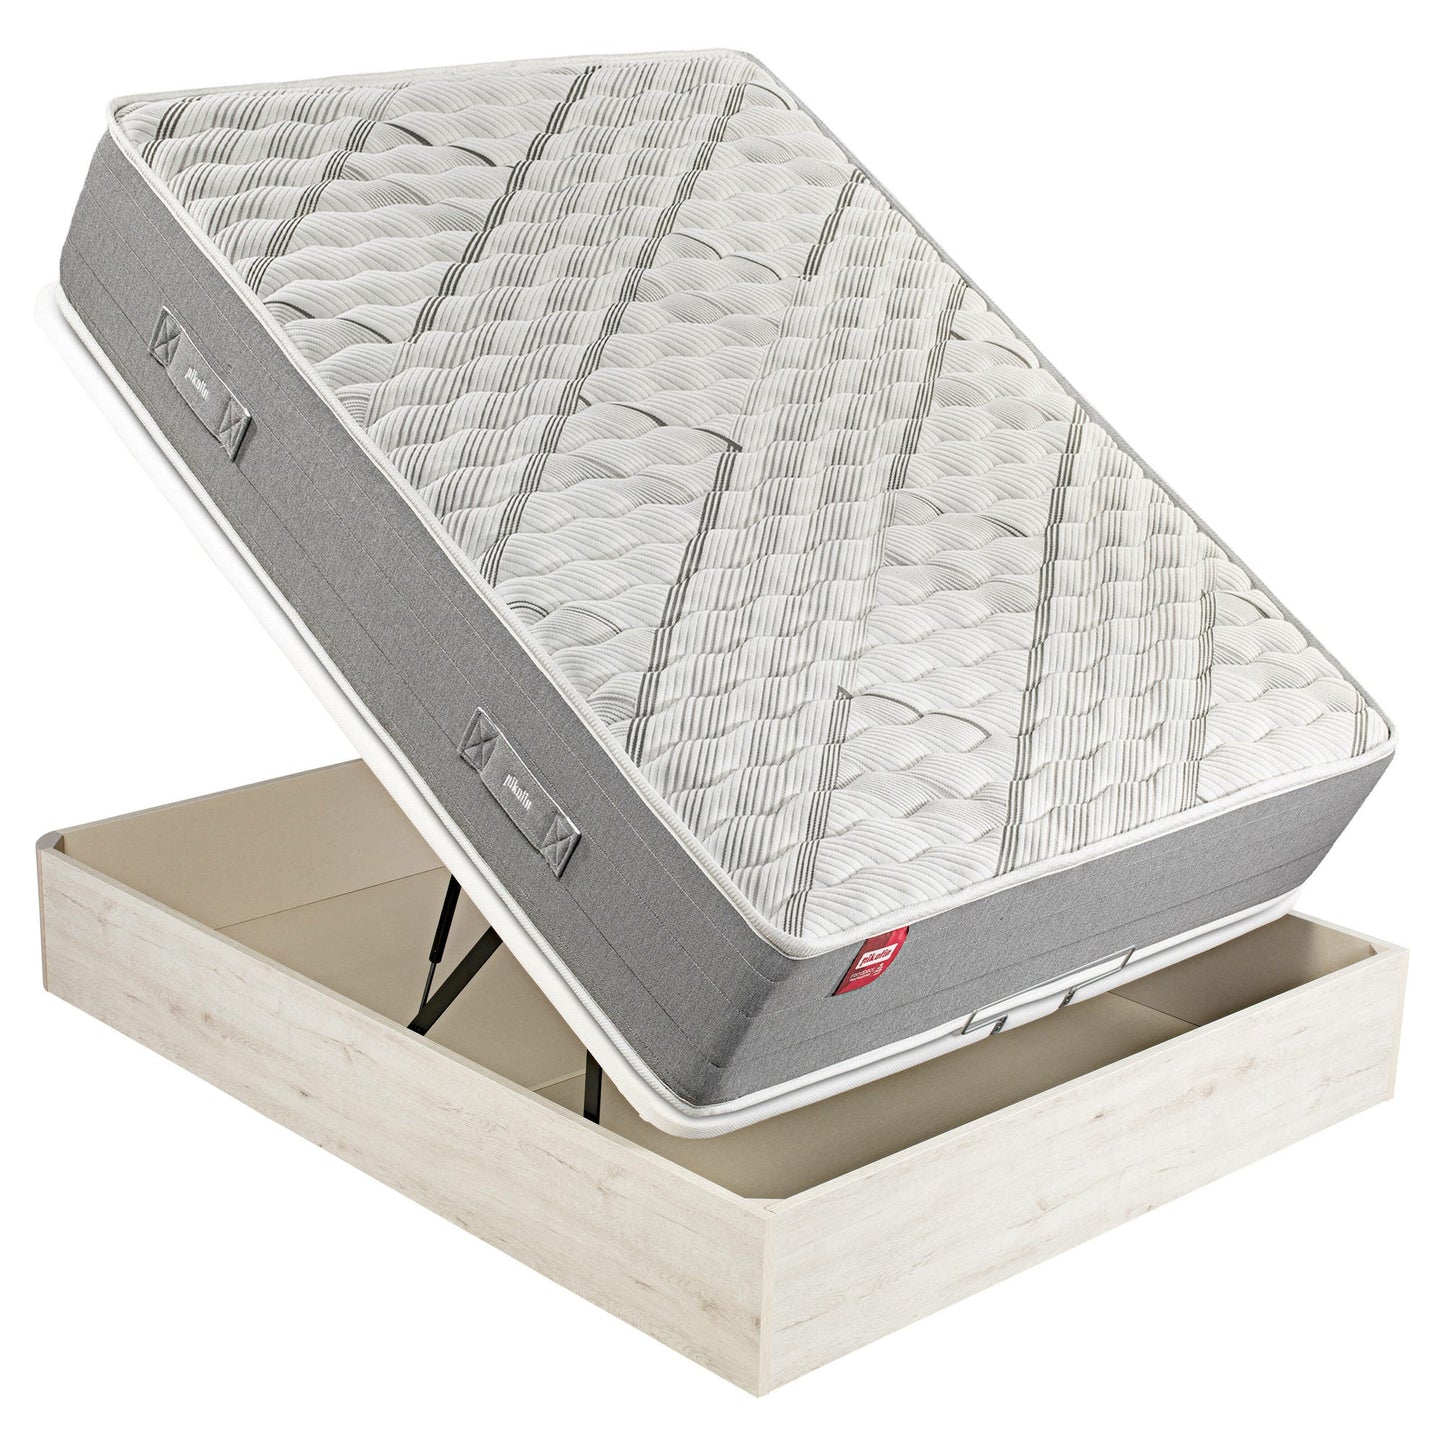 Pack de colchón de muelles Normablock, canapé abatible de color glaciar y 2 almohadas de visco - ARCE+AP11518+AL - 160x200